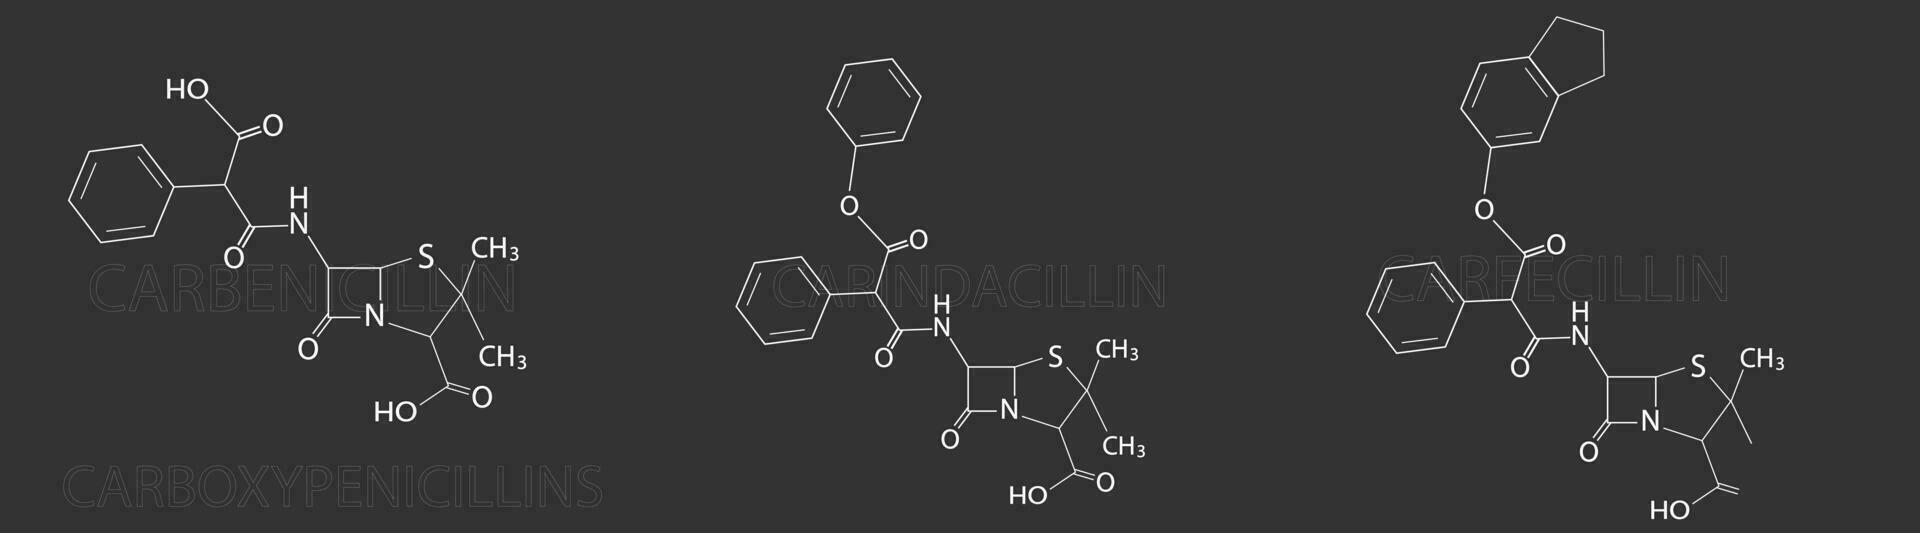 carboxypénicillines moléculaire squelettique chimique formule vecteur